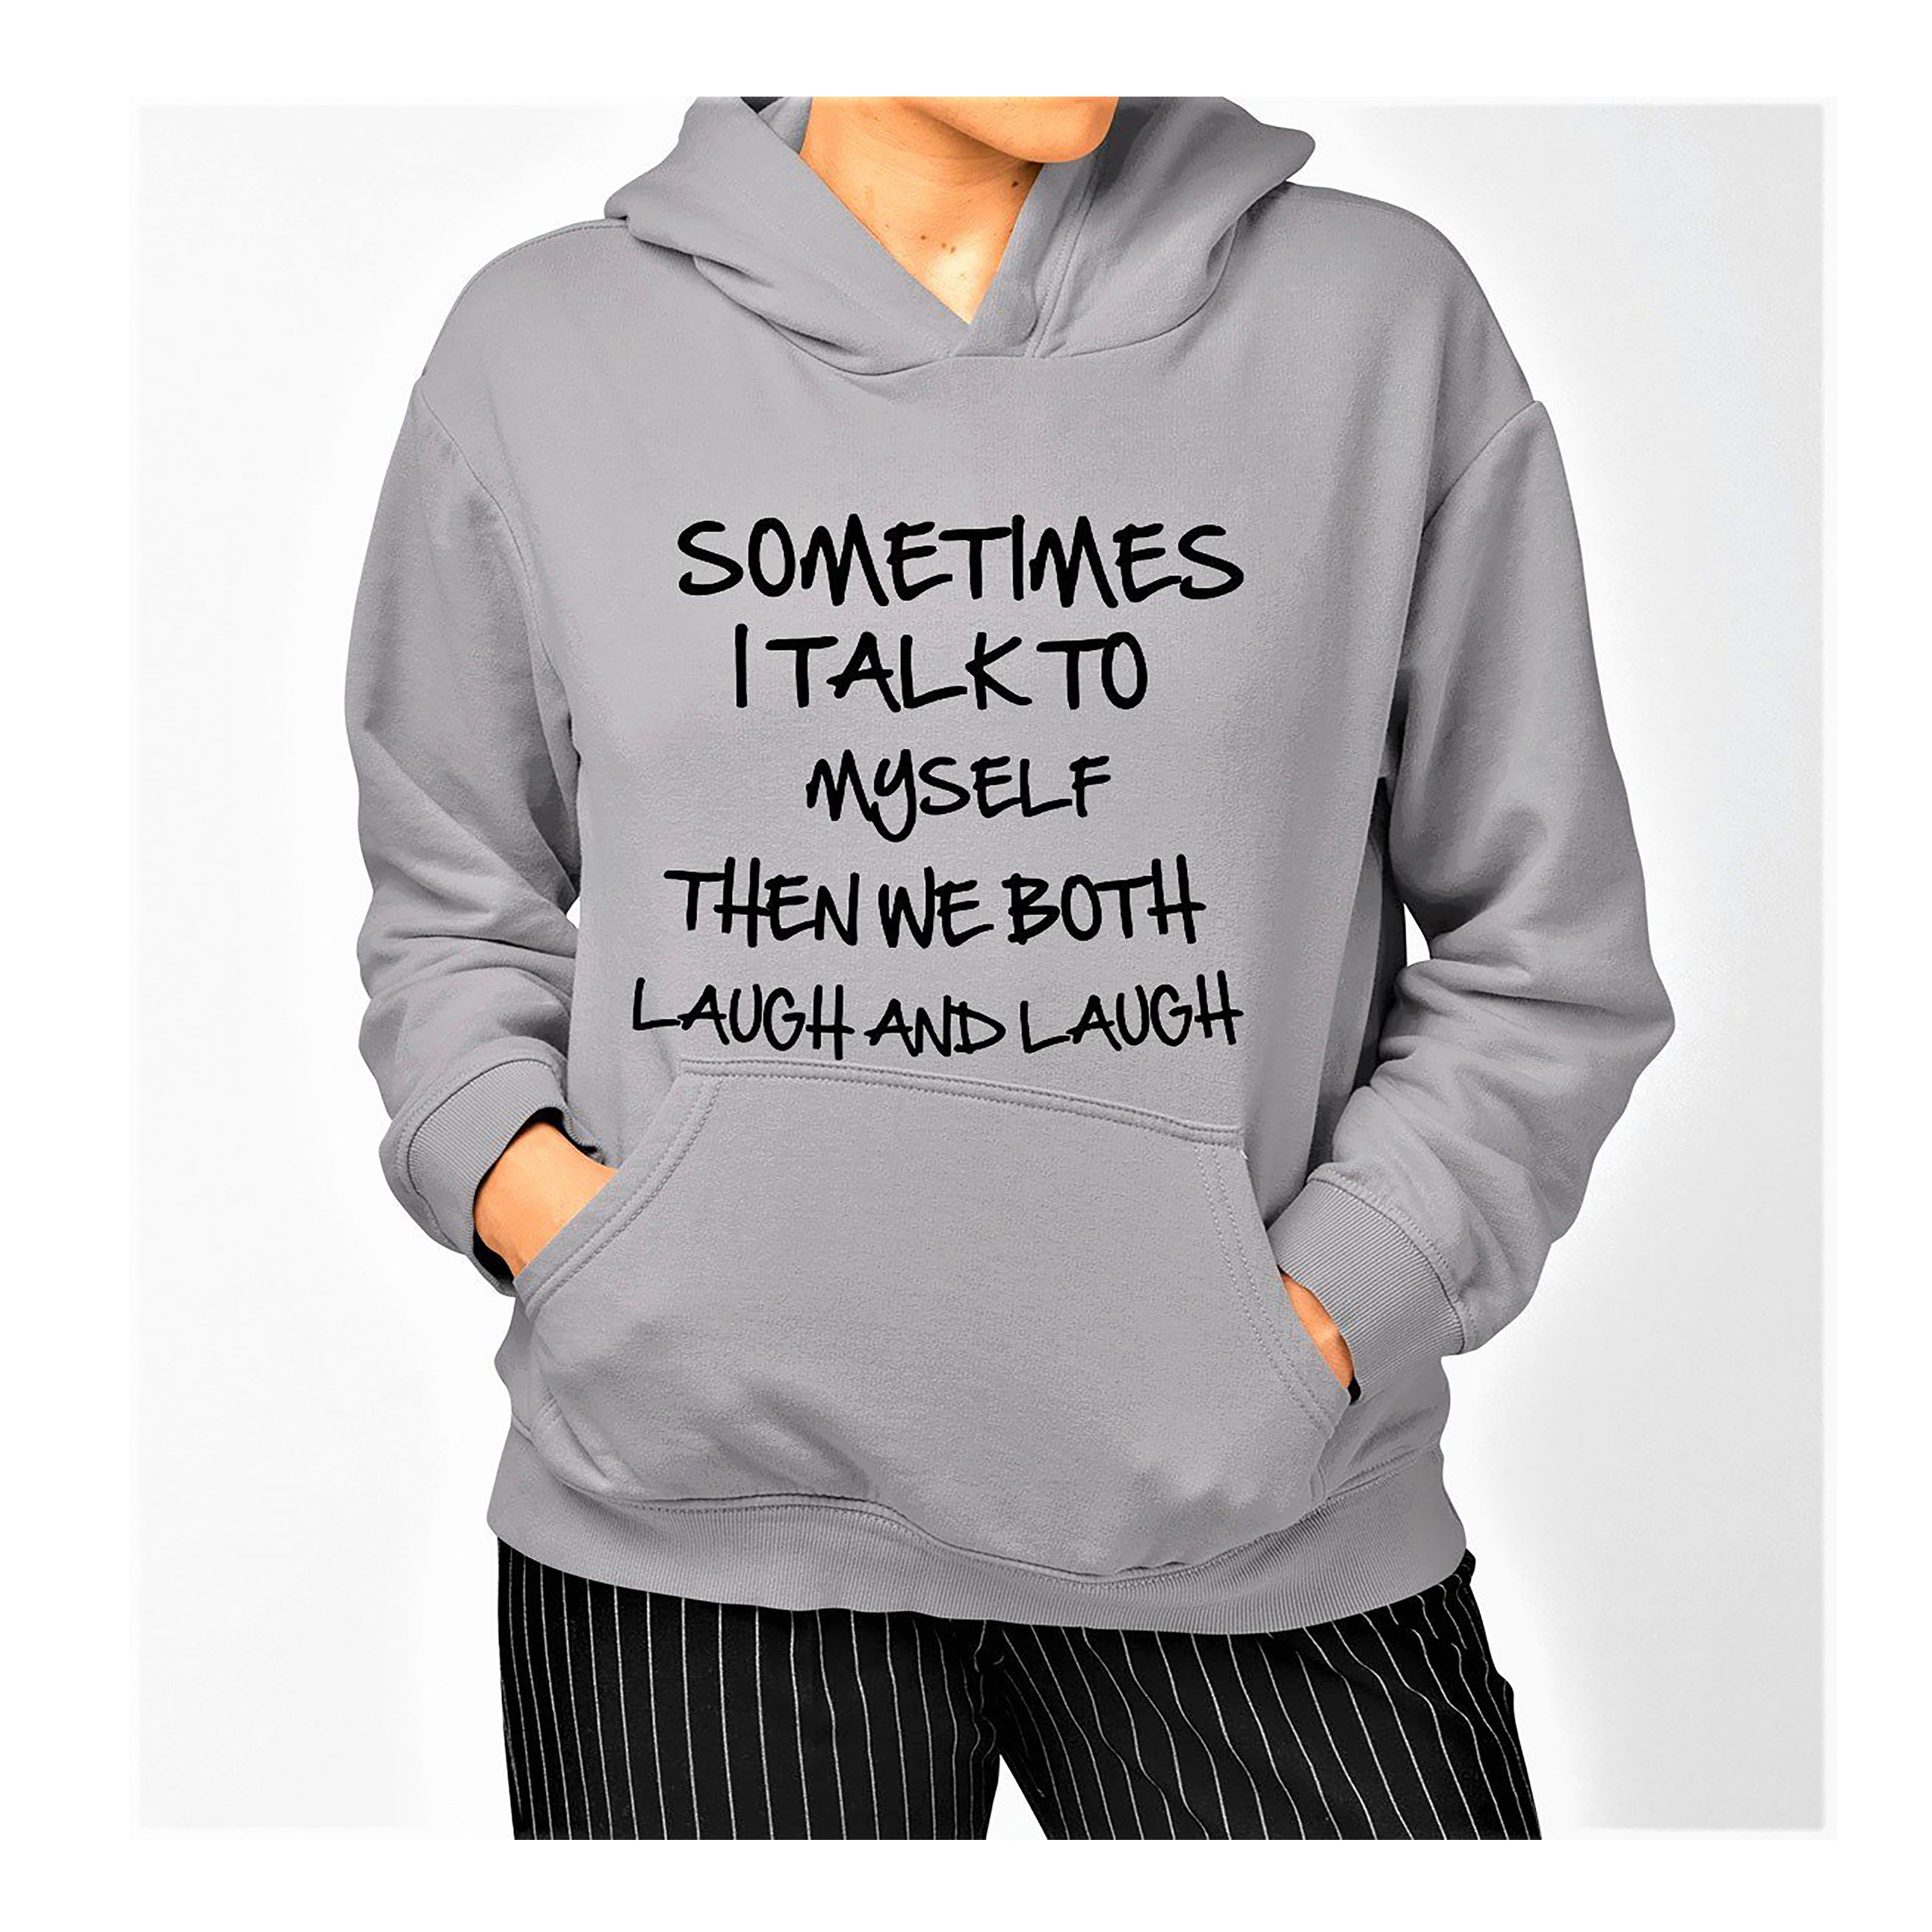 "SOMETIMES I TALK TO MYSELF" T-Shirt